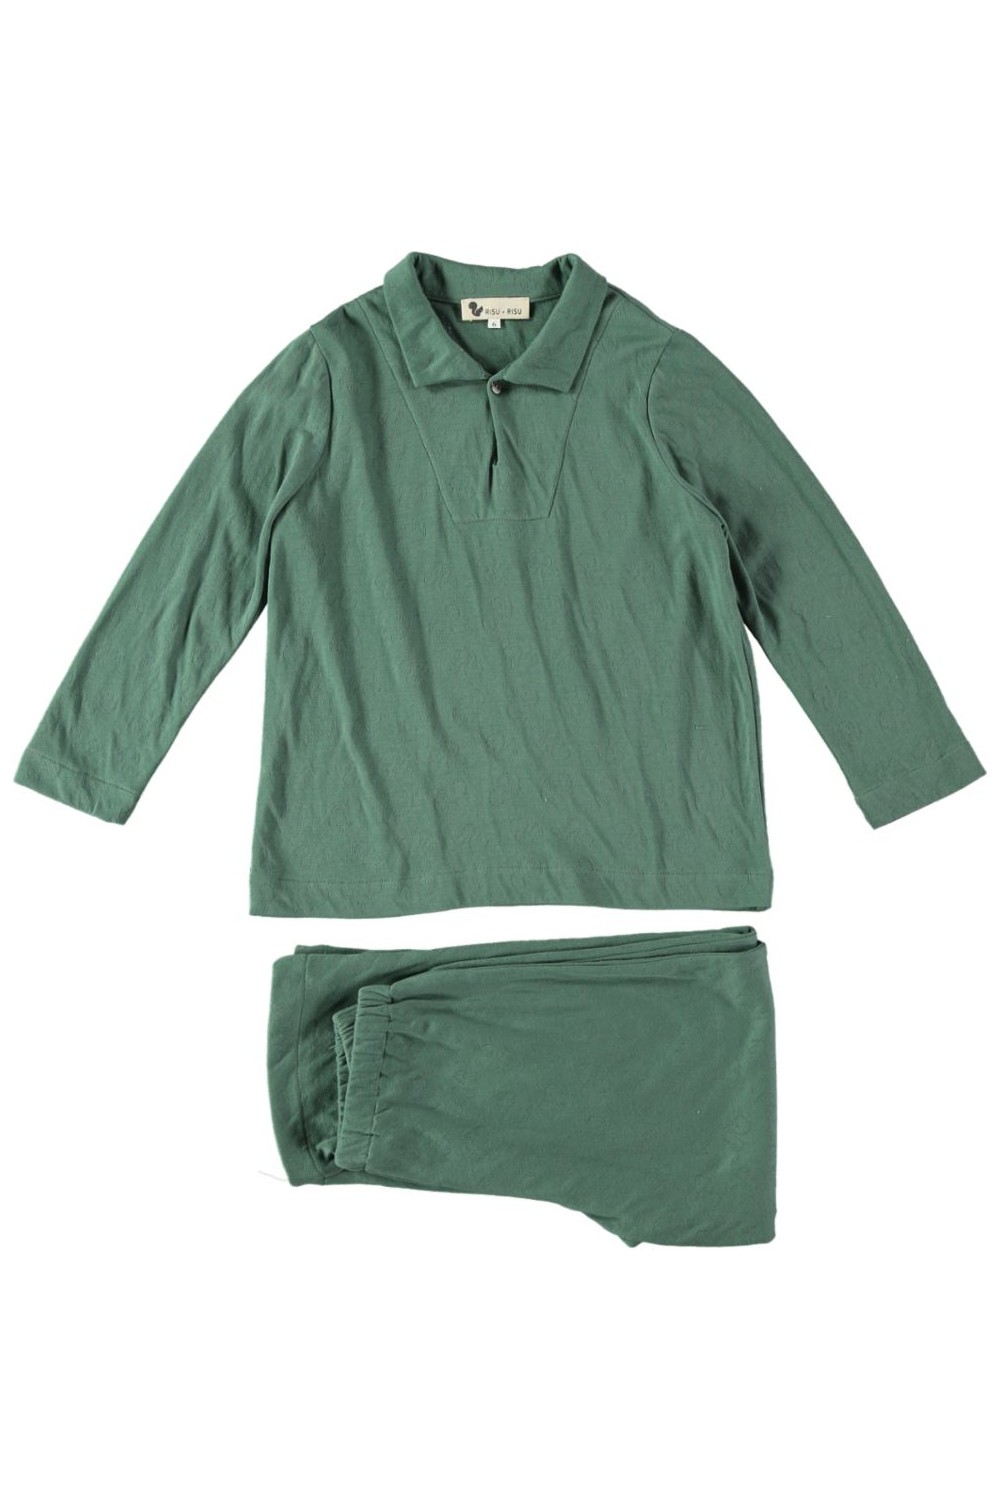 Pyjama Nino jersey cotton organic boy matcha green night